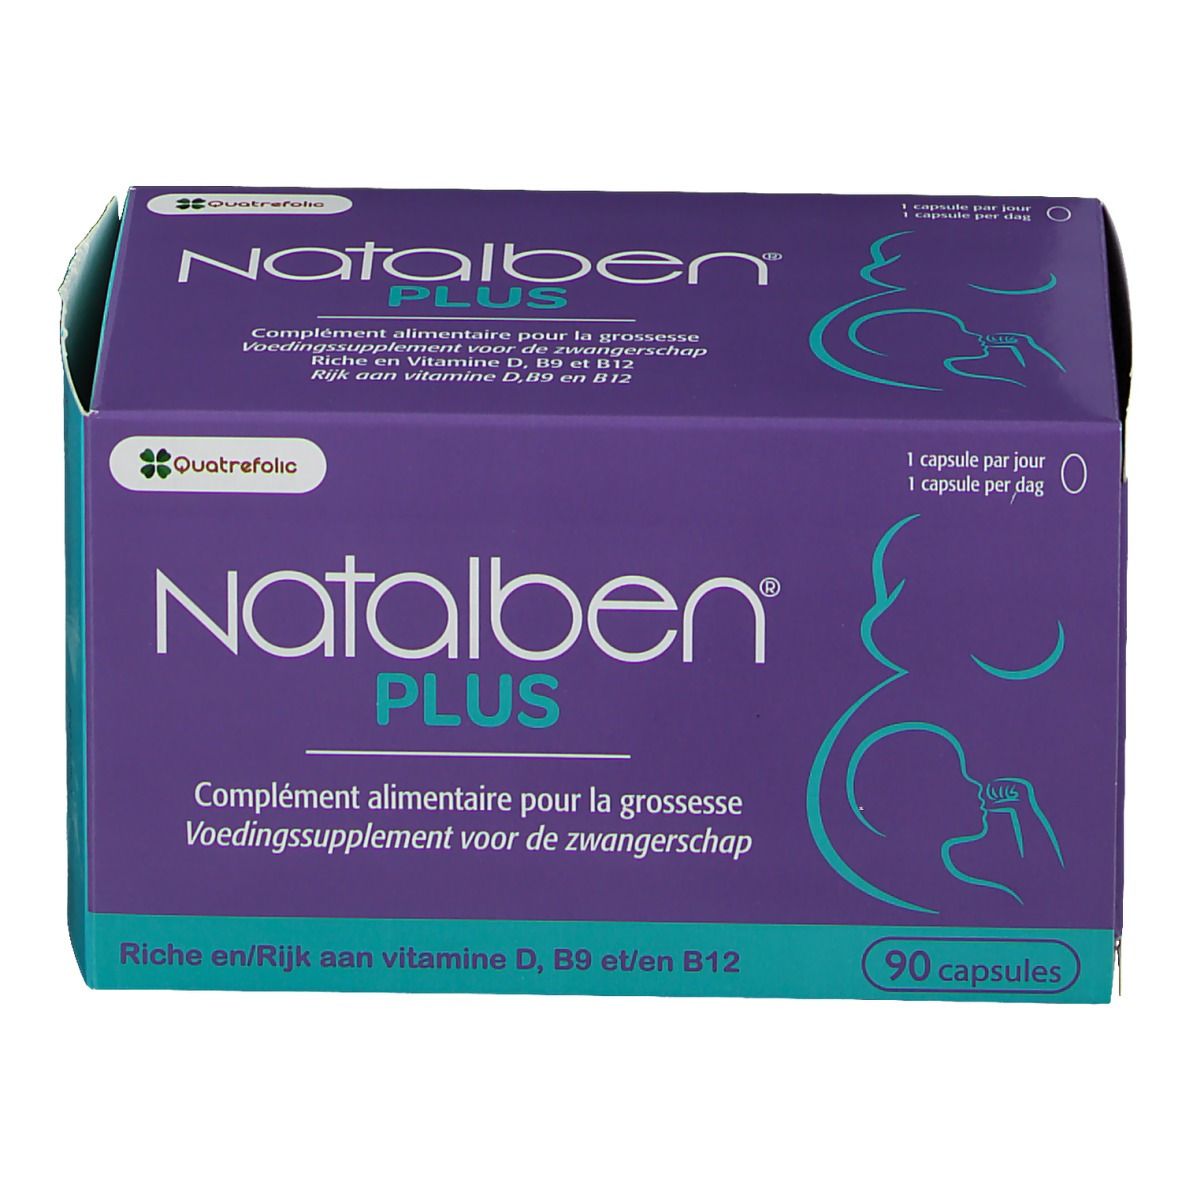 Natalben Plus